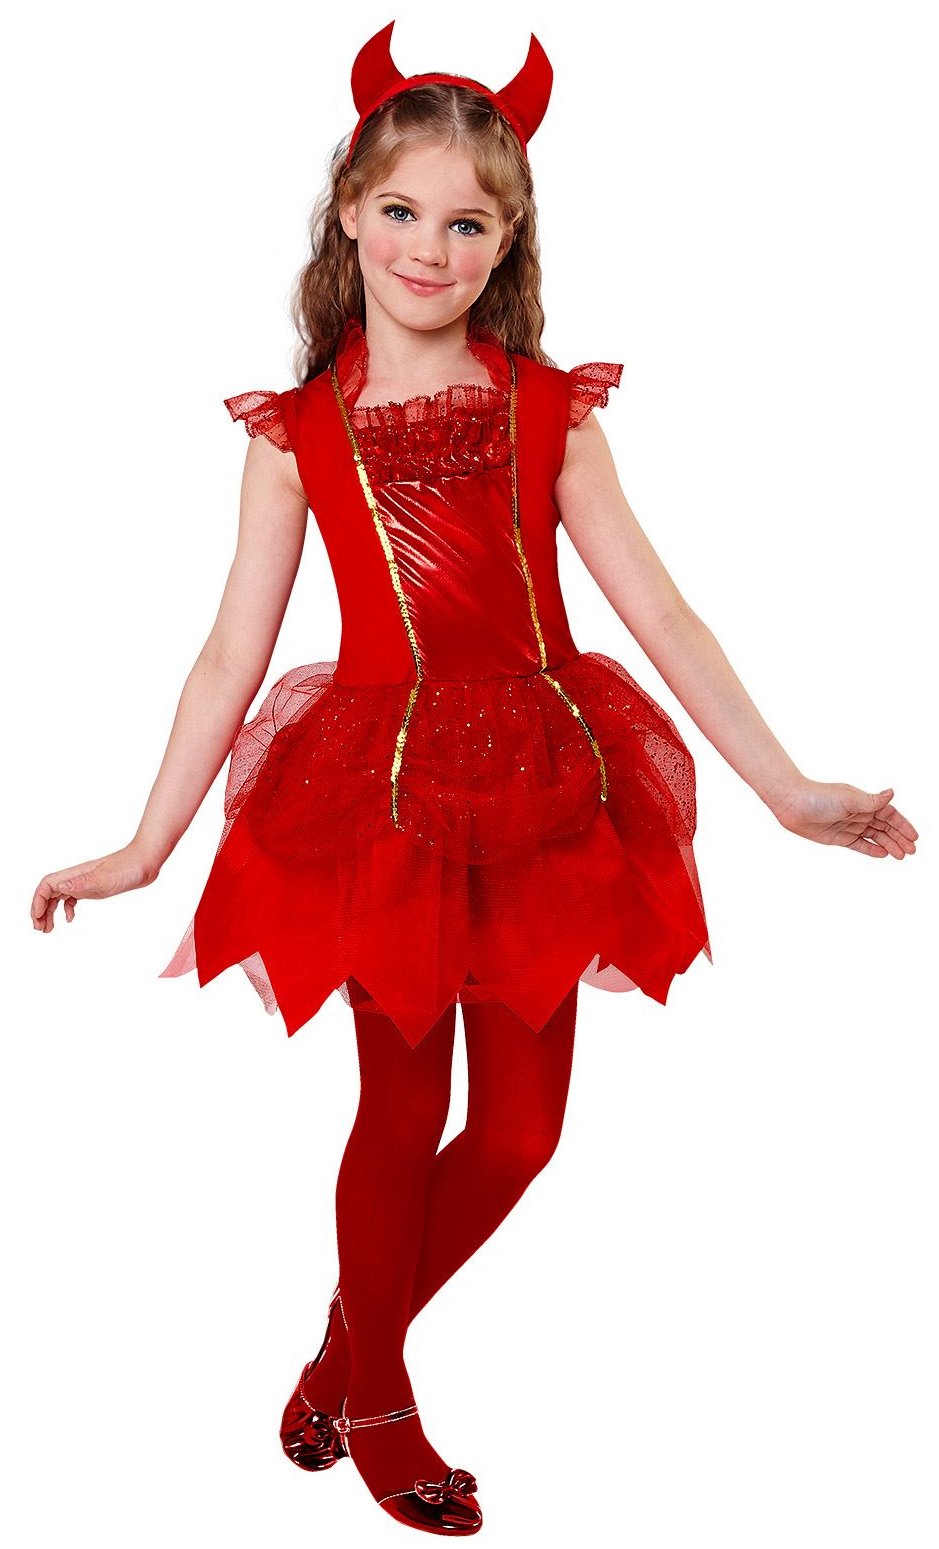 Disfraz de Diablita para niña (8 años) - Disfraces No solo fiesta